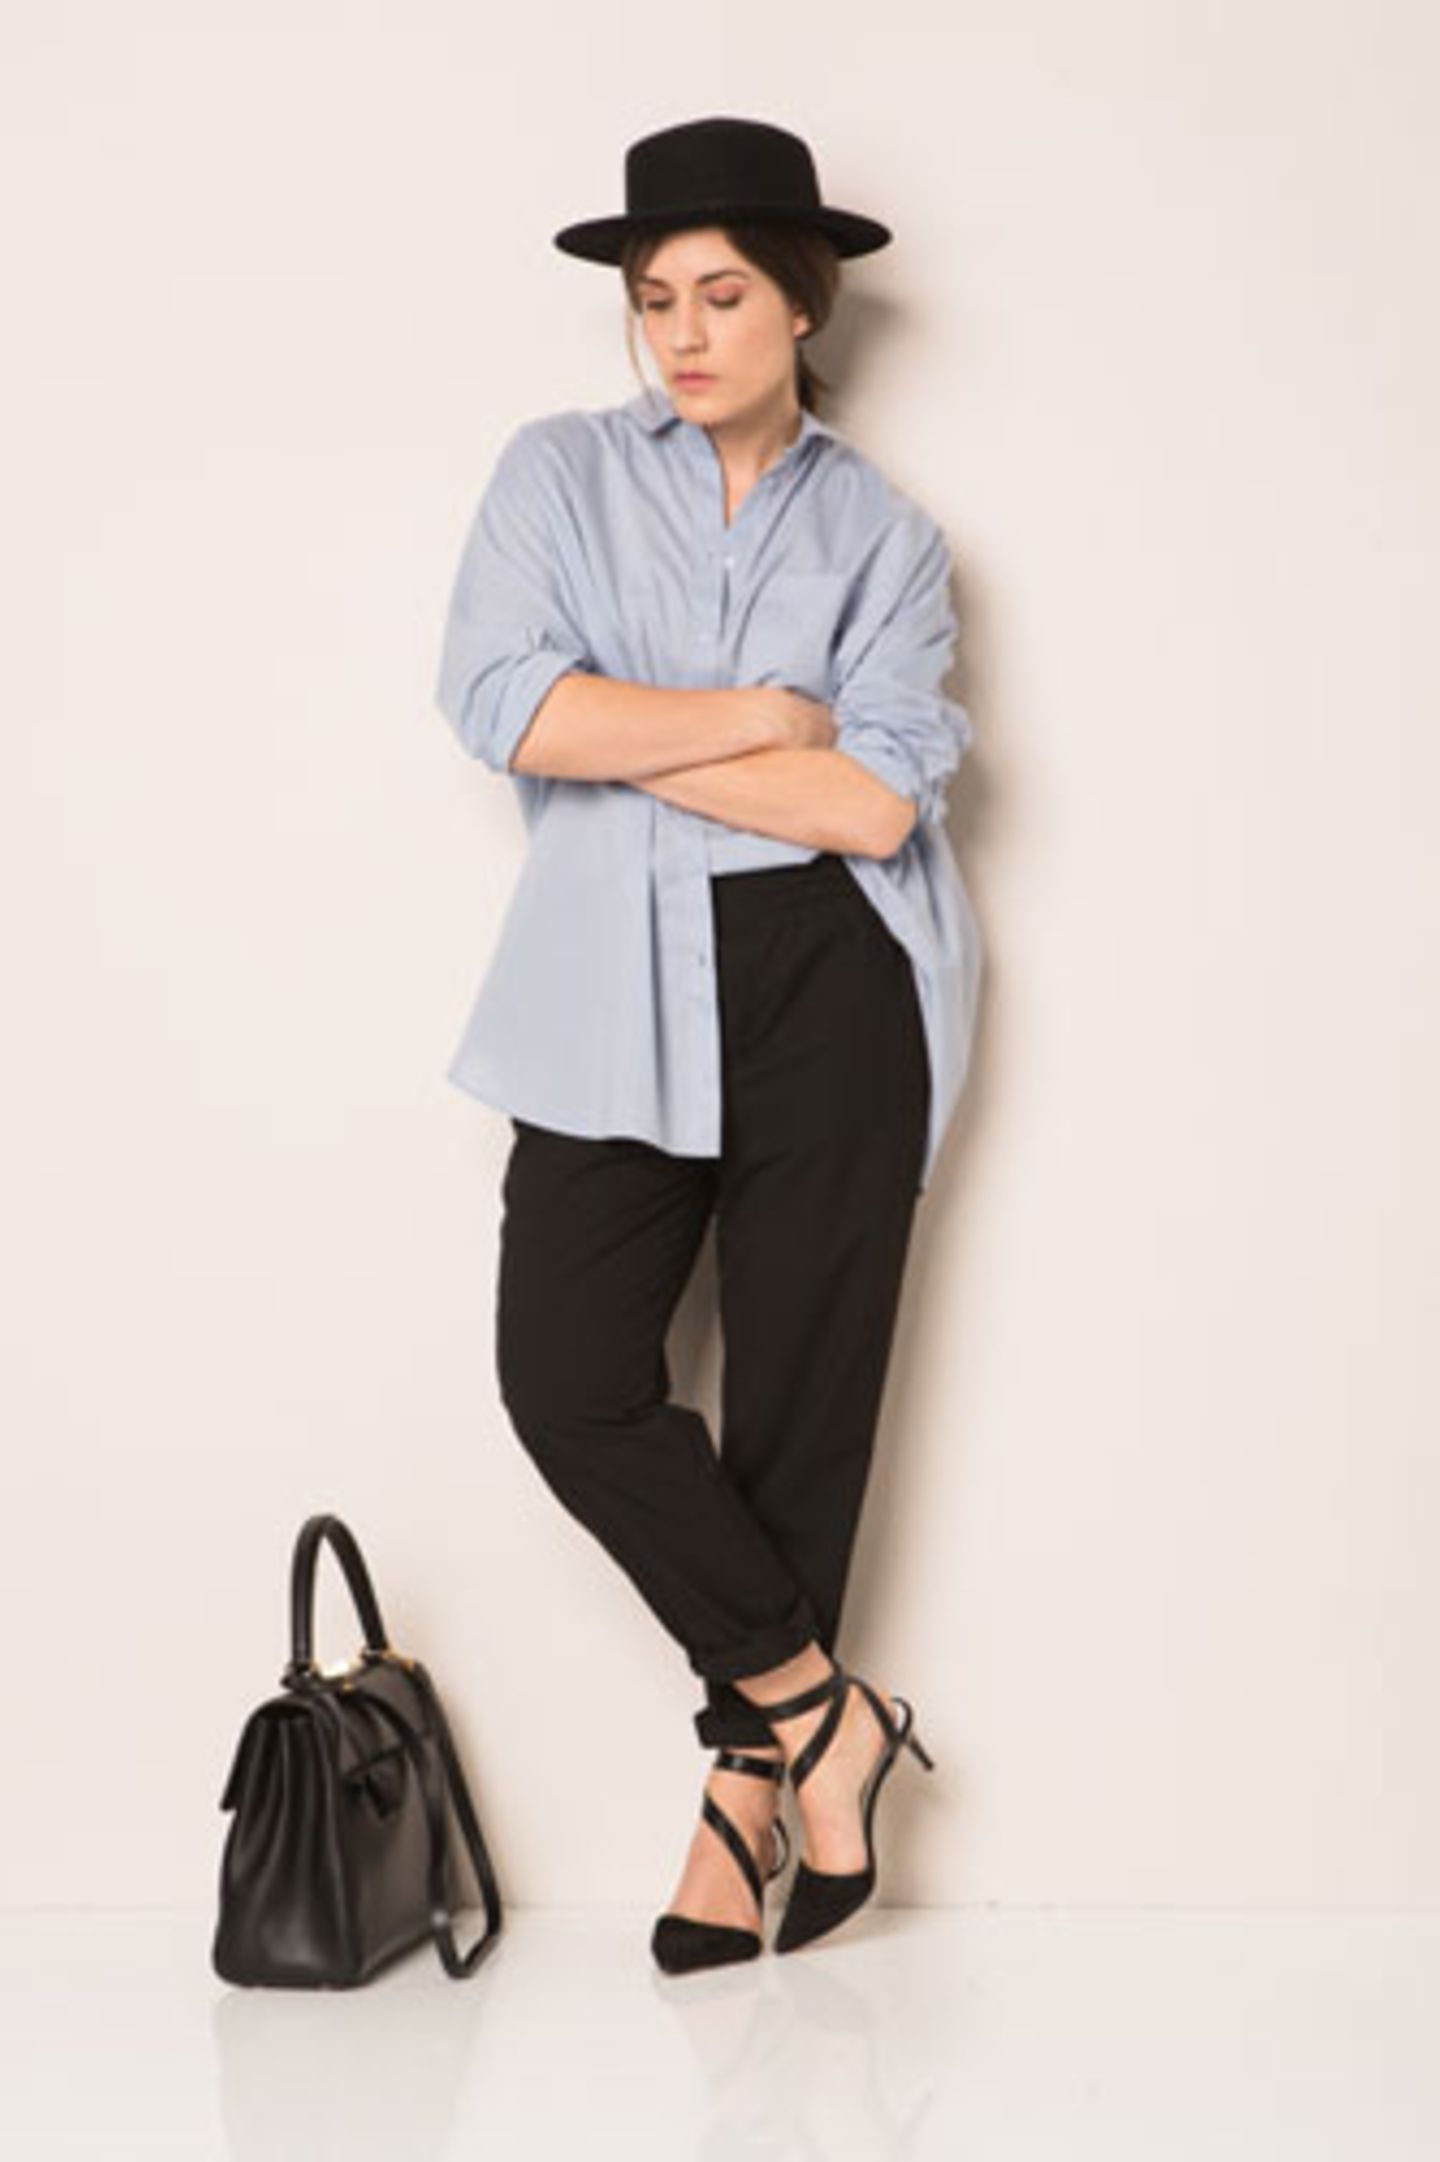 Bloggerin Carola von Vienna Wedekind wählte für ihren ersten Look ein blaues Herrenhemd und eine klassische schwarze Hose. Als Stilbruch kombinierte sie dazu feminine Pumps und einen markanten Hut.